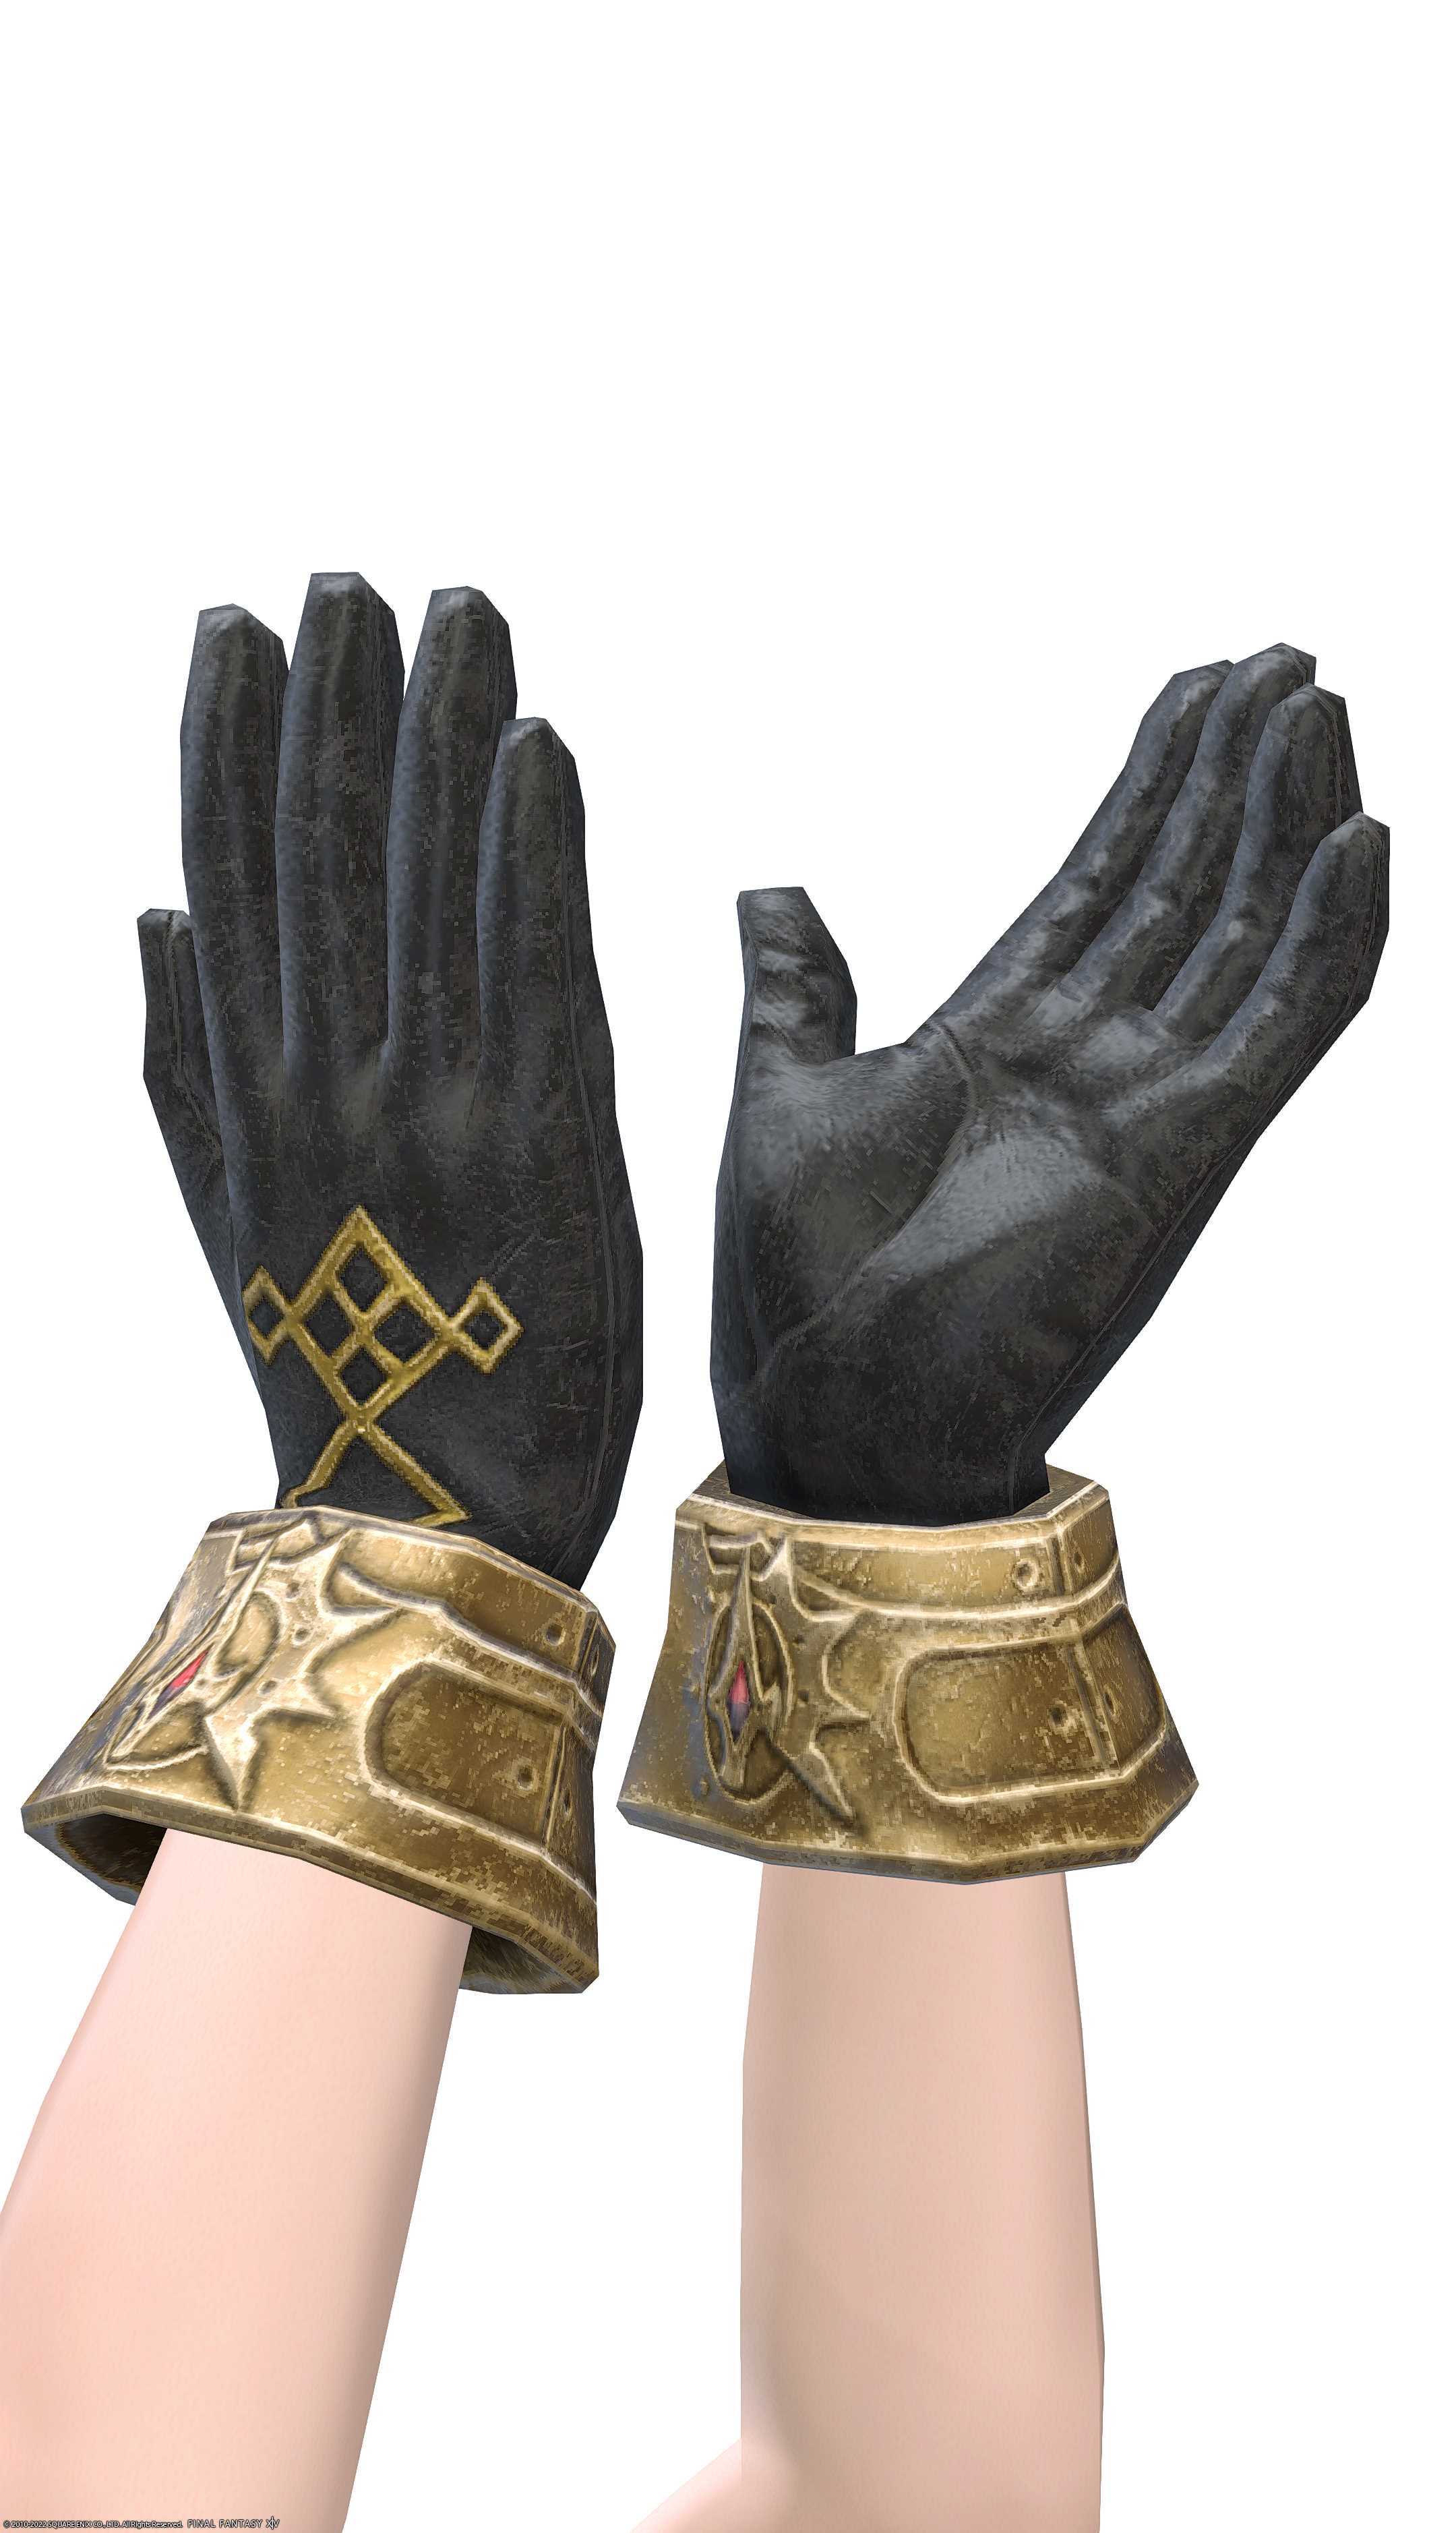 エクサーク・キャスターグローブ | FF14ミラプリ - Exarchic Gloves of Casting - 手袋/グローブ